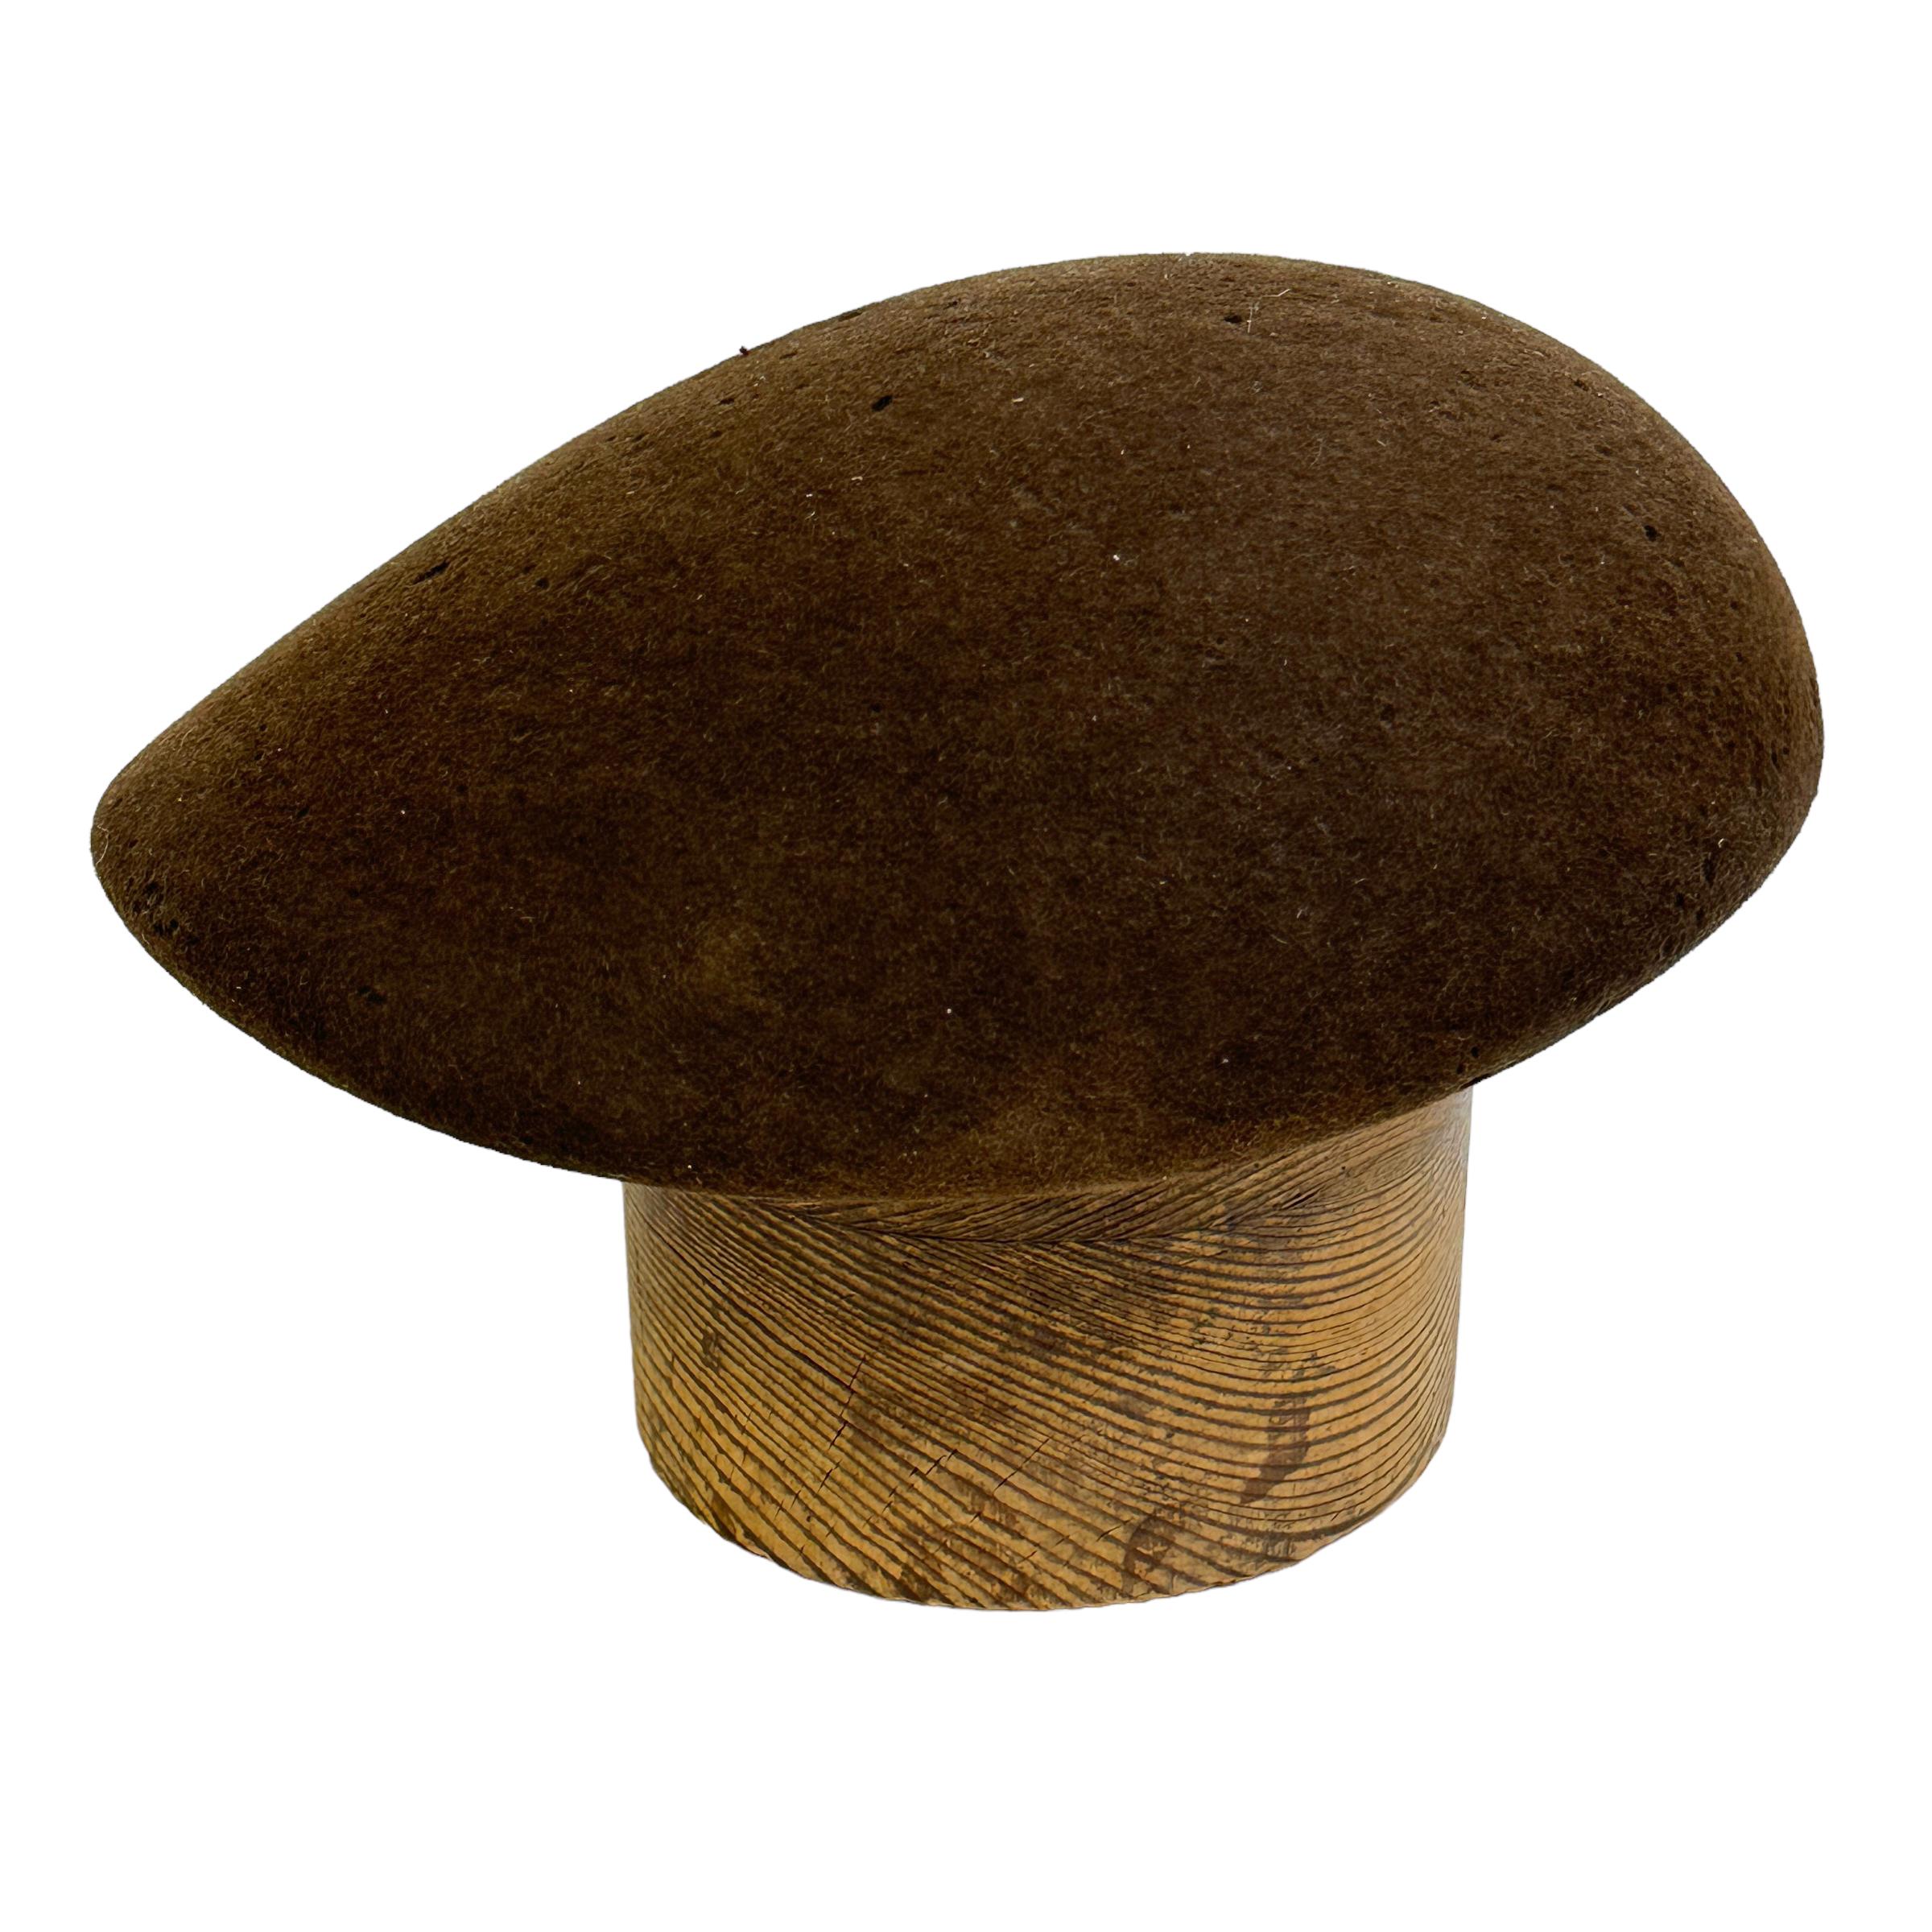 Superbe moule à chapeau en bois et en feutre, trouvé lors d'une vente de succession à Vienne, en Autriche. A la forme typique du style Art déco. Nous pensons donc qu'il a été fabriqué dans les années 1930. Bel objet de décoration ou beau support